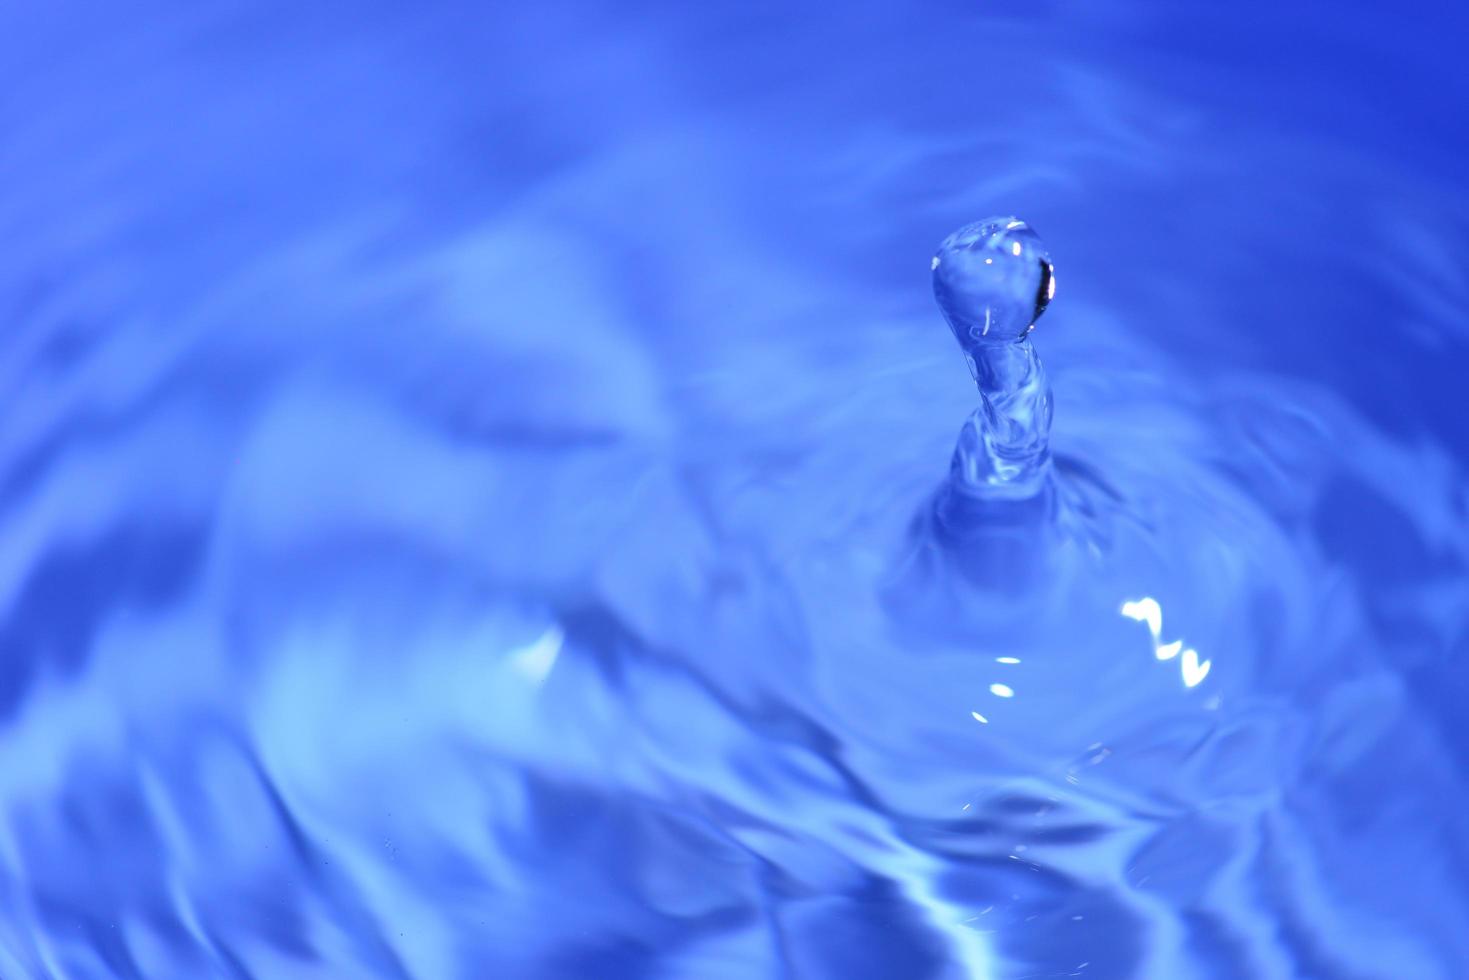 formes abstraites de l'eau. image pour un fond fait d'eau. photo